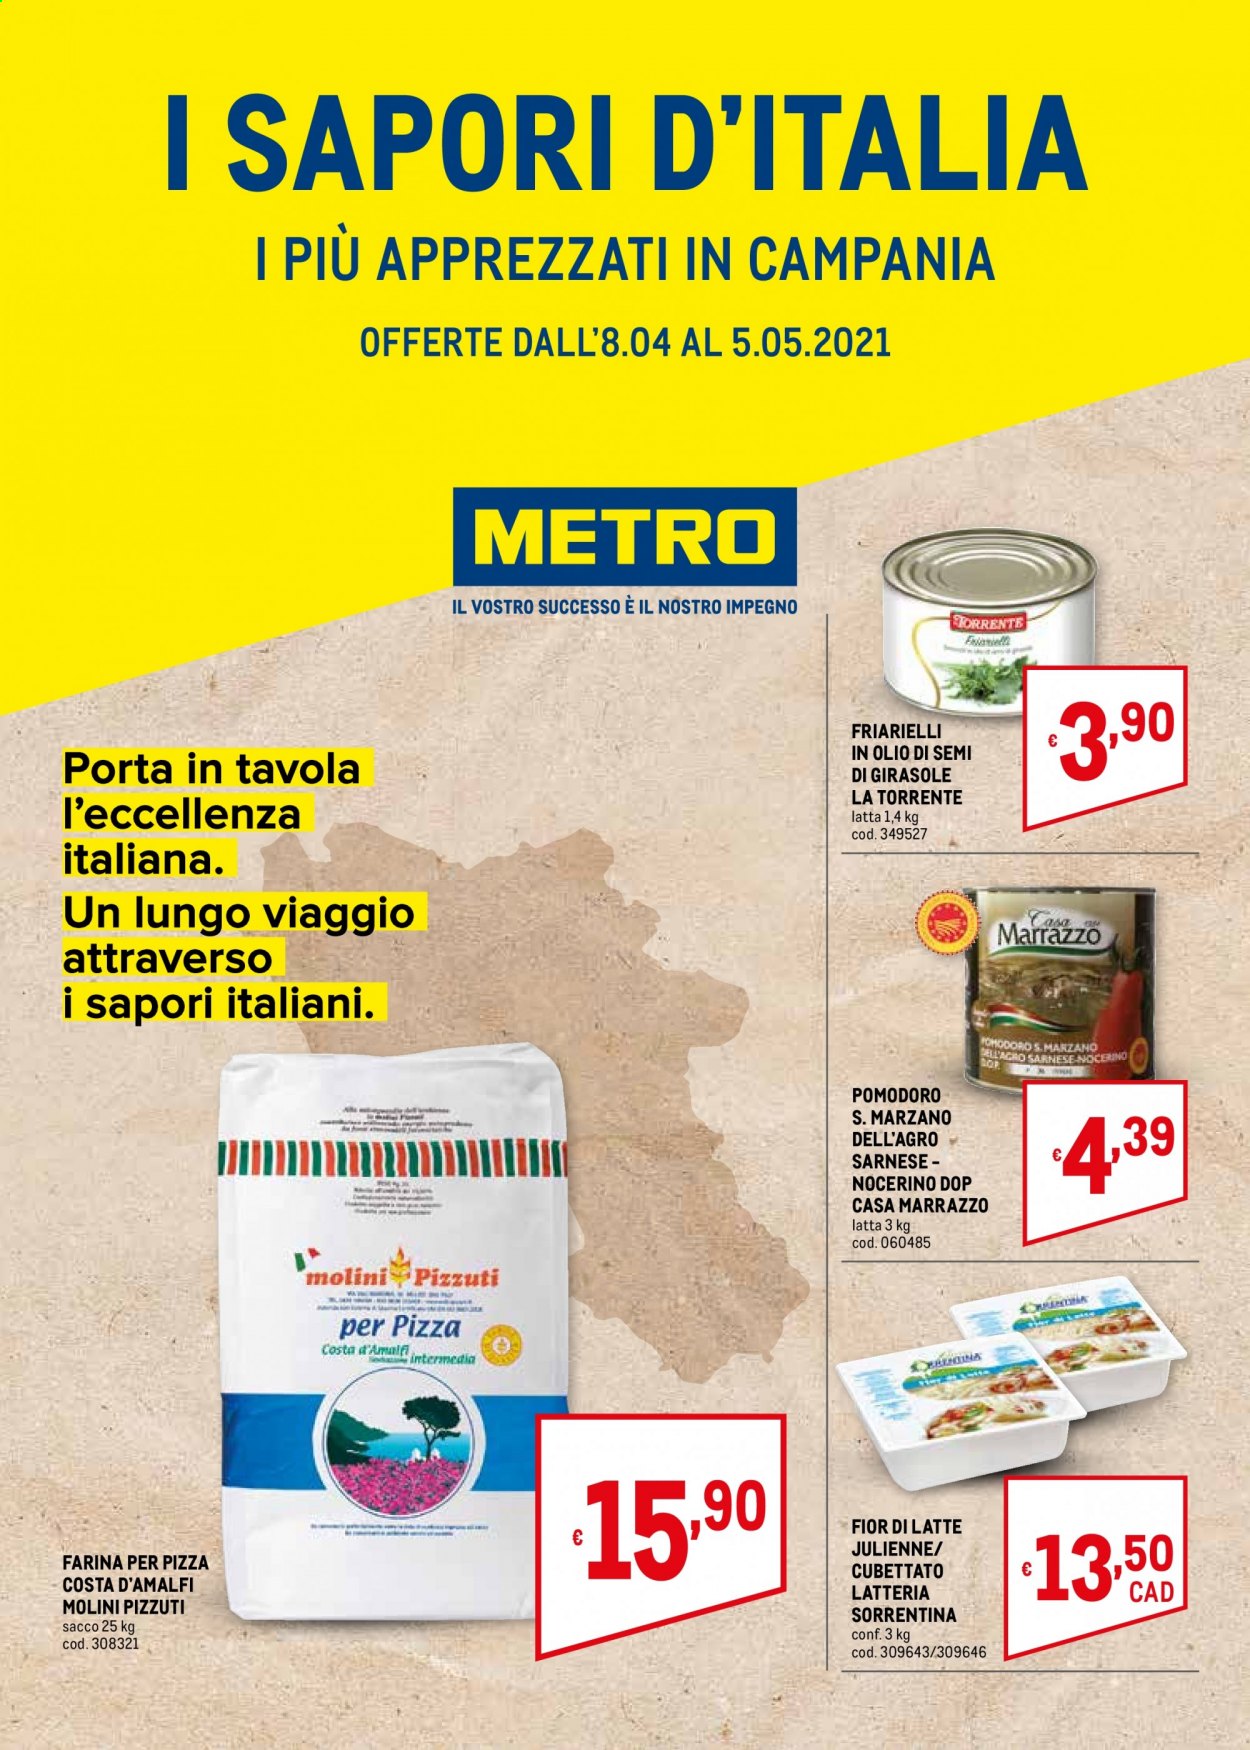 thumbnail - Volantino Metro - 8/4/2021 - 5/5/2021 - Prodotti in offerta - friarielli, pomodori, Fior di Latte, farina, La Torrente. Pagina 1.